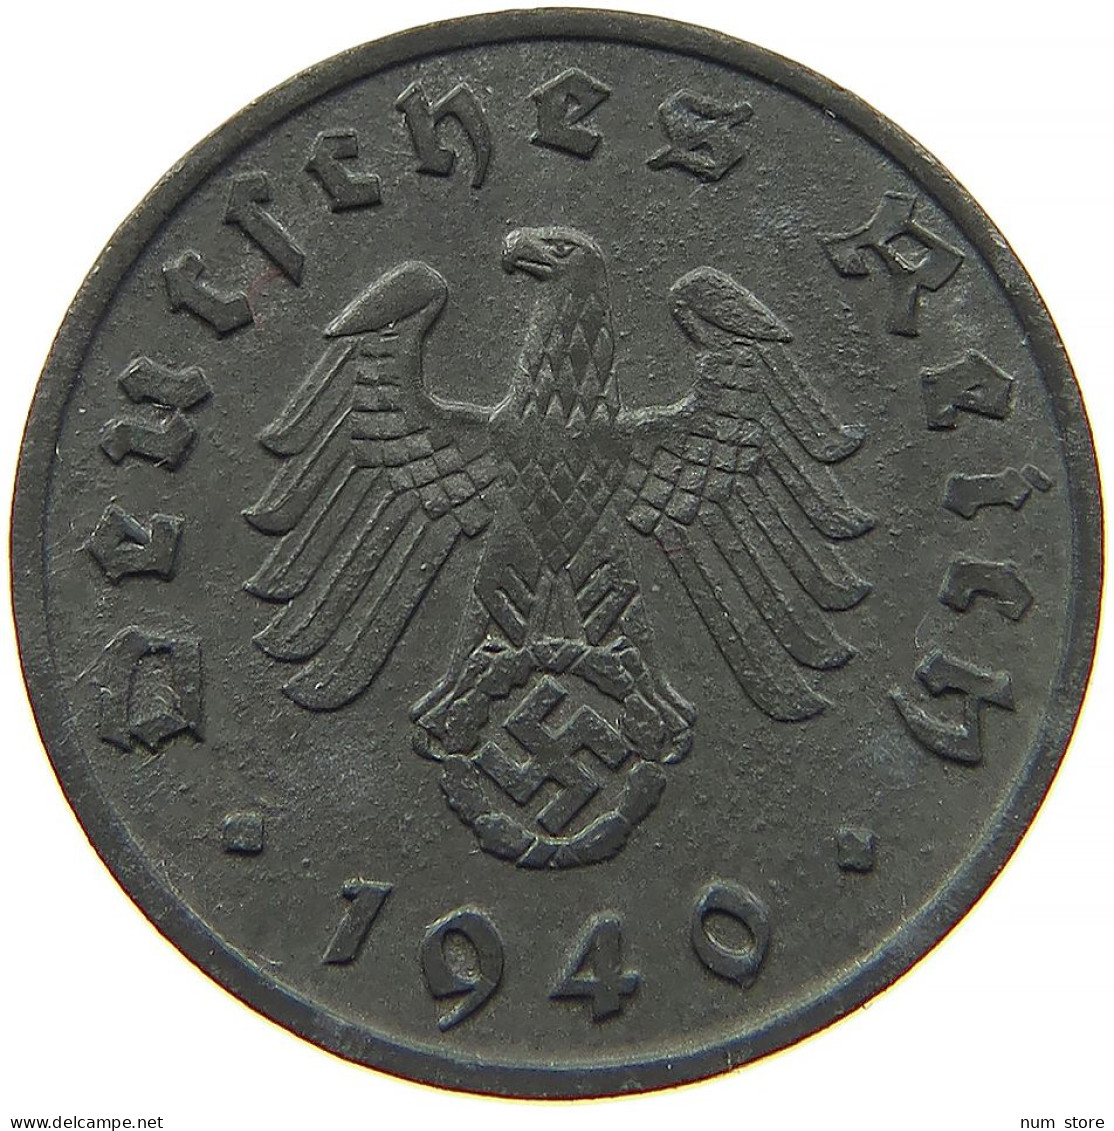 GERMANY 1 REICHSPFENNIG 1940 A #s091 1153 - 1 Reichspfennig